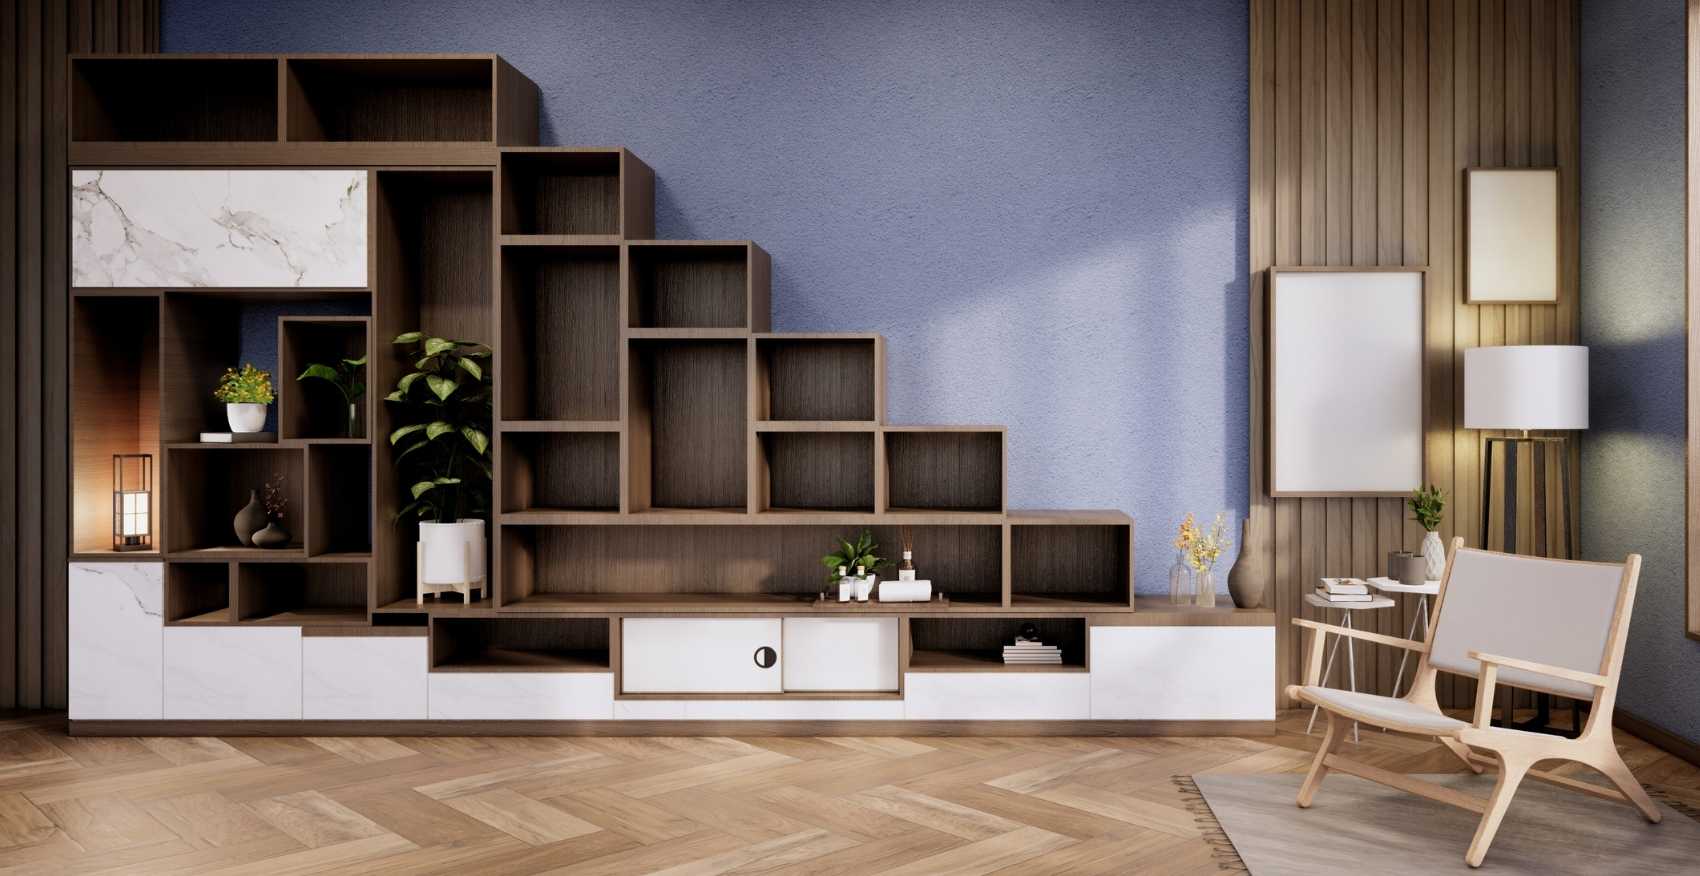 Interior Design Holzproduktion Living room